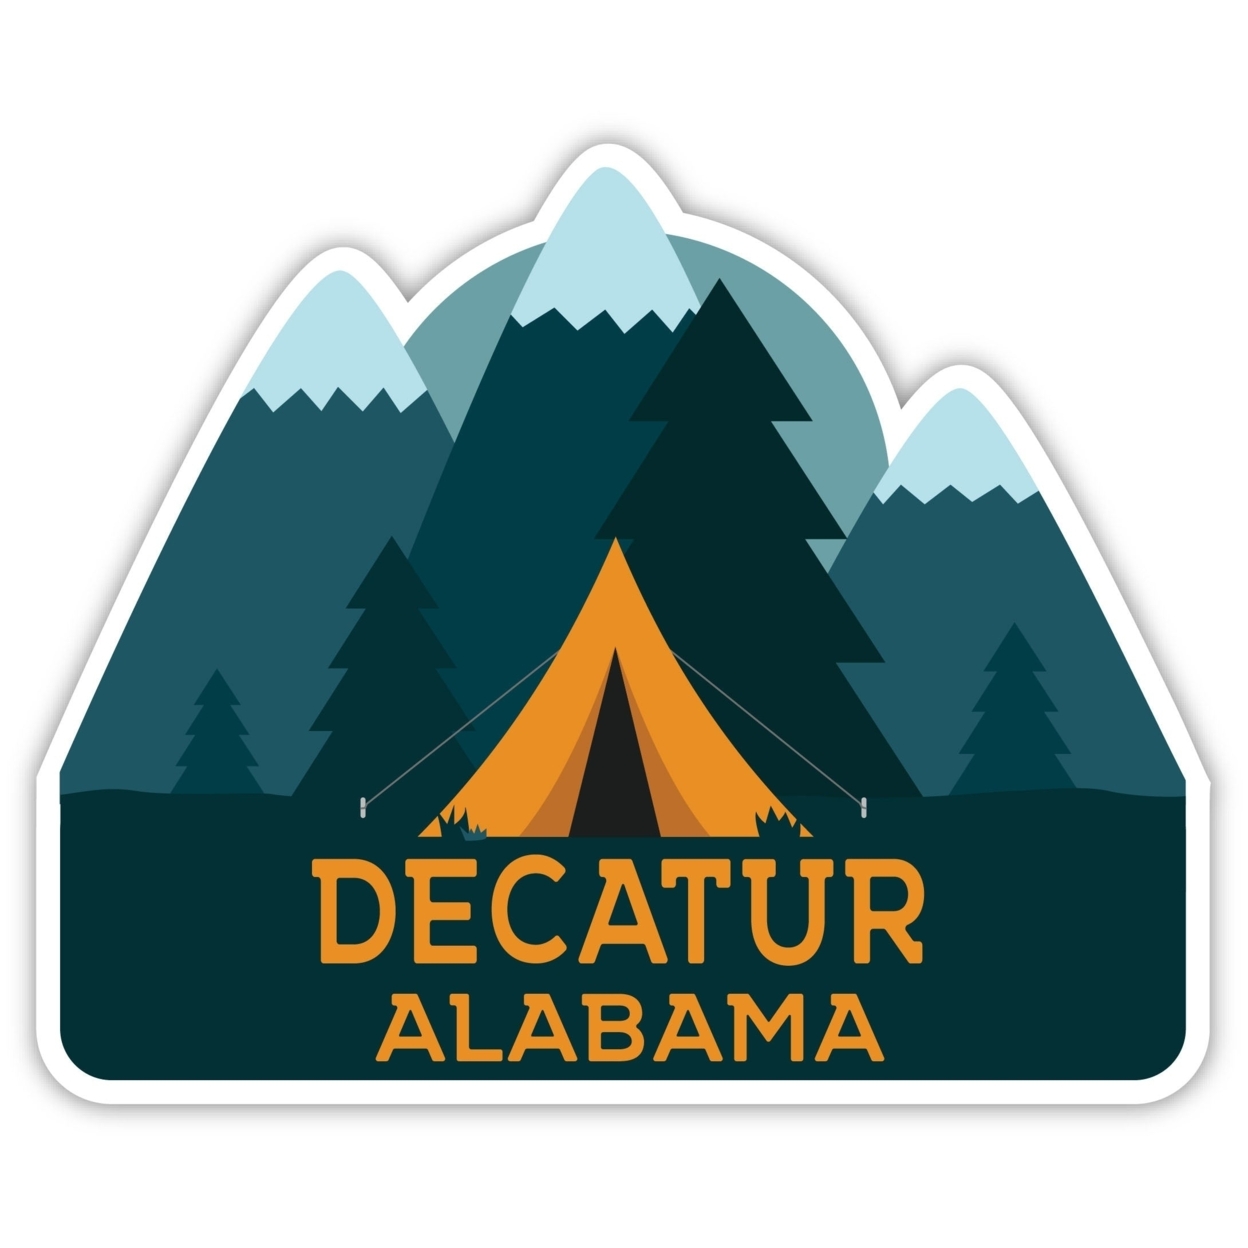 Decatur Alabama Souvenir Decorative Stickers (Choose Theme And Size) - Single Unit, 4-Inch, Tent